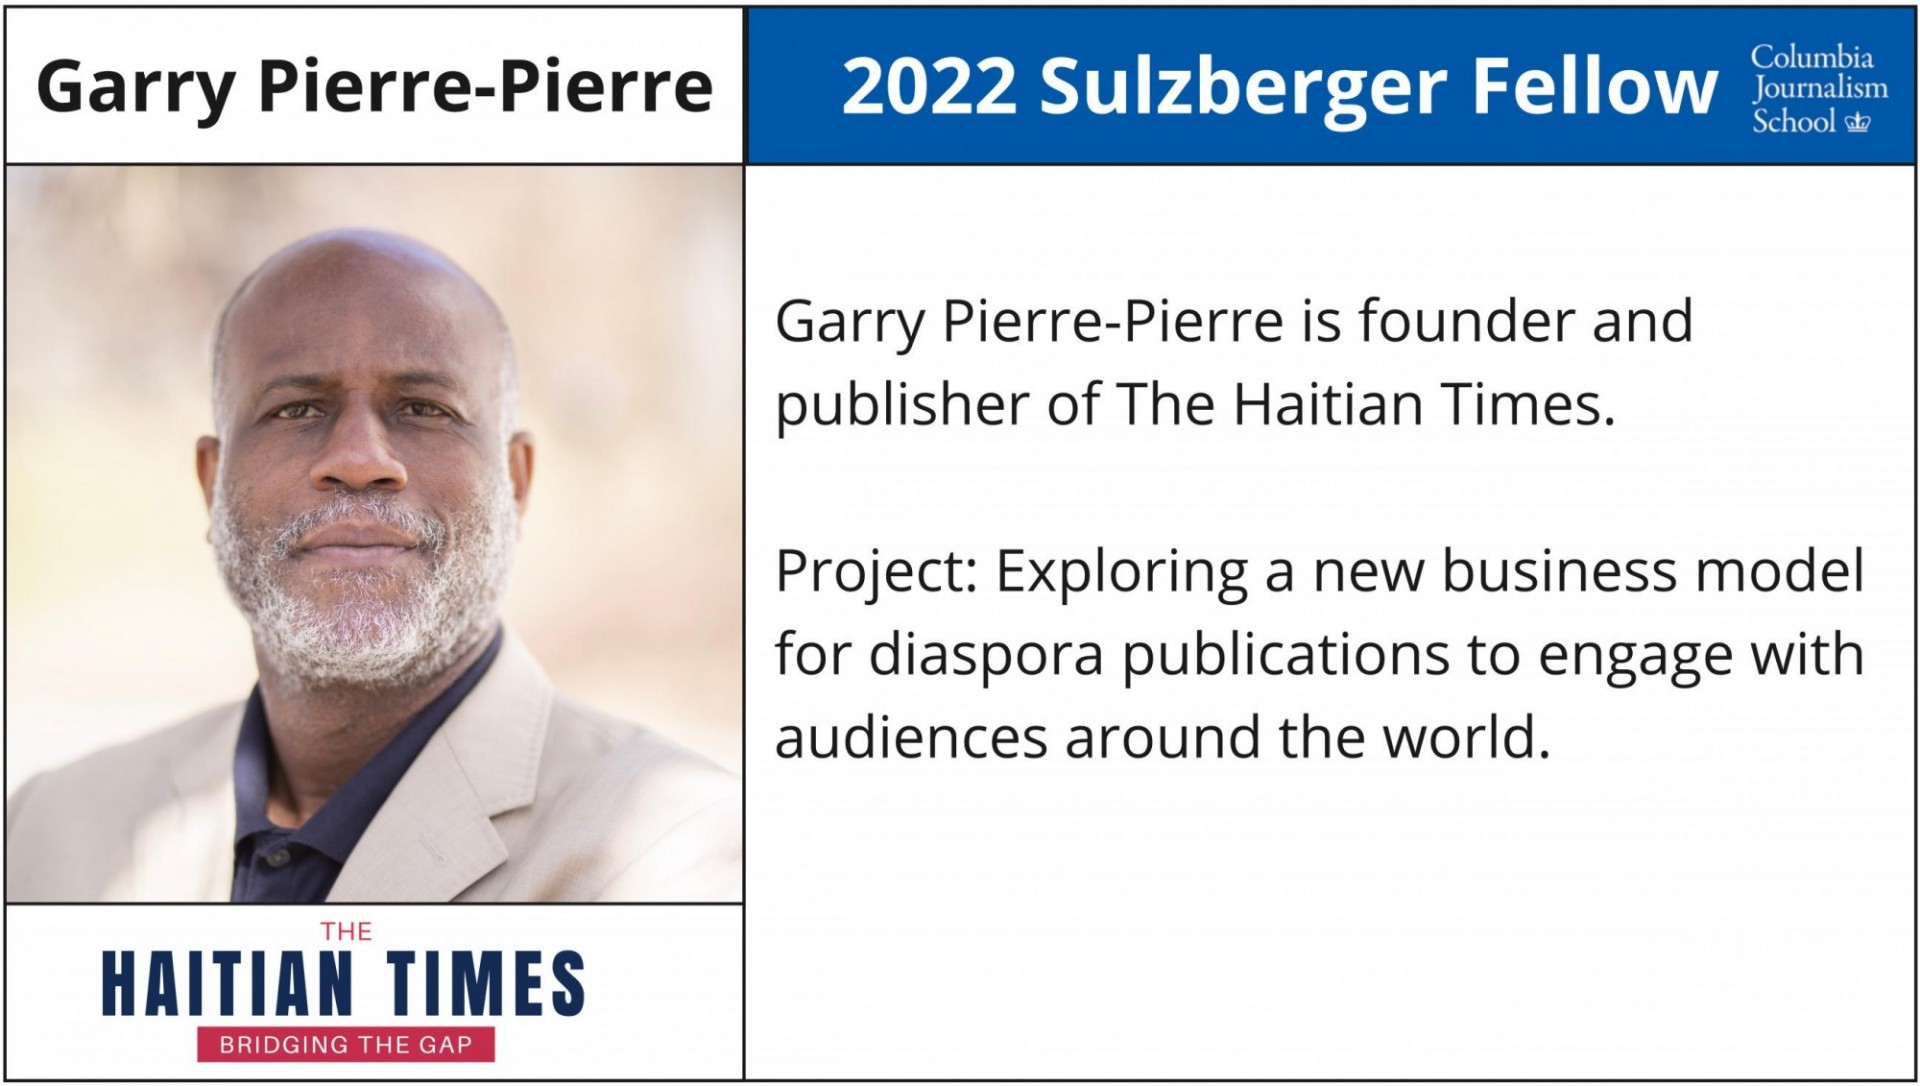 Gary Pierre-Pierre